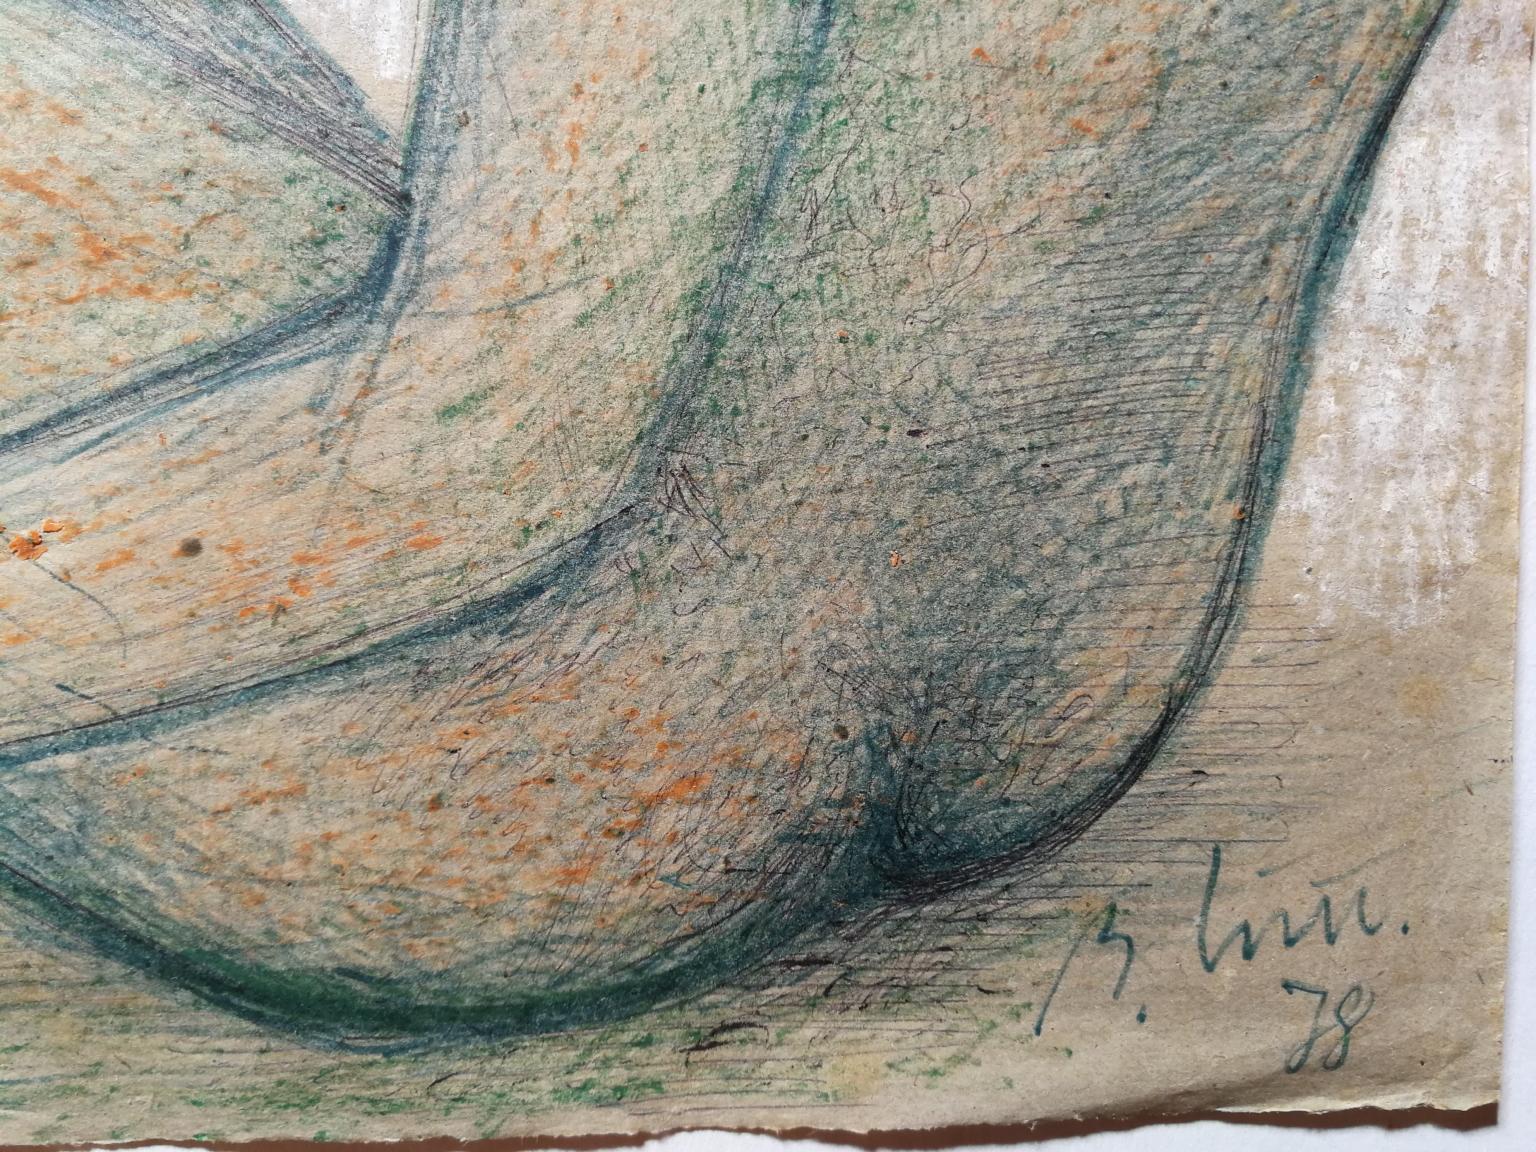 Il disegno (matite colorate, gesso, inchiostro su carta) raffigura una figura androgina seduta accovacciata ed è firmato e datato in basso a destra B. INN 78.
Appartiene alla alla fase matura dell'artista fiorentino Bruno Innocenti, quando si era